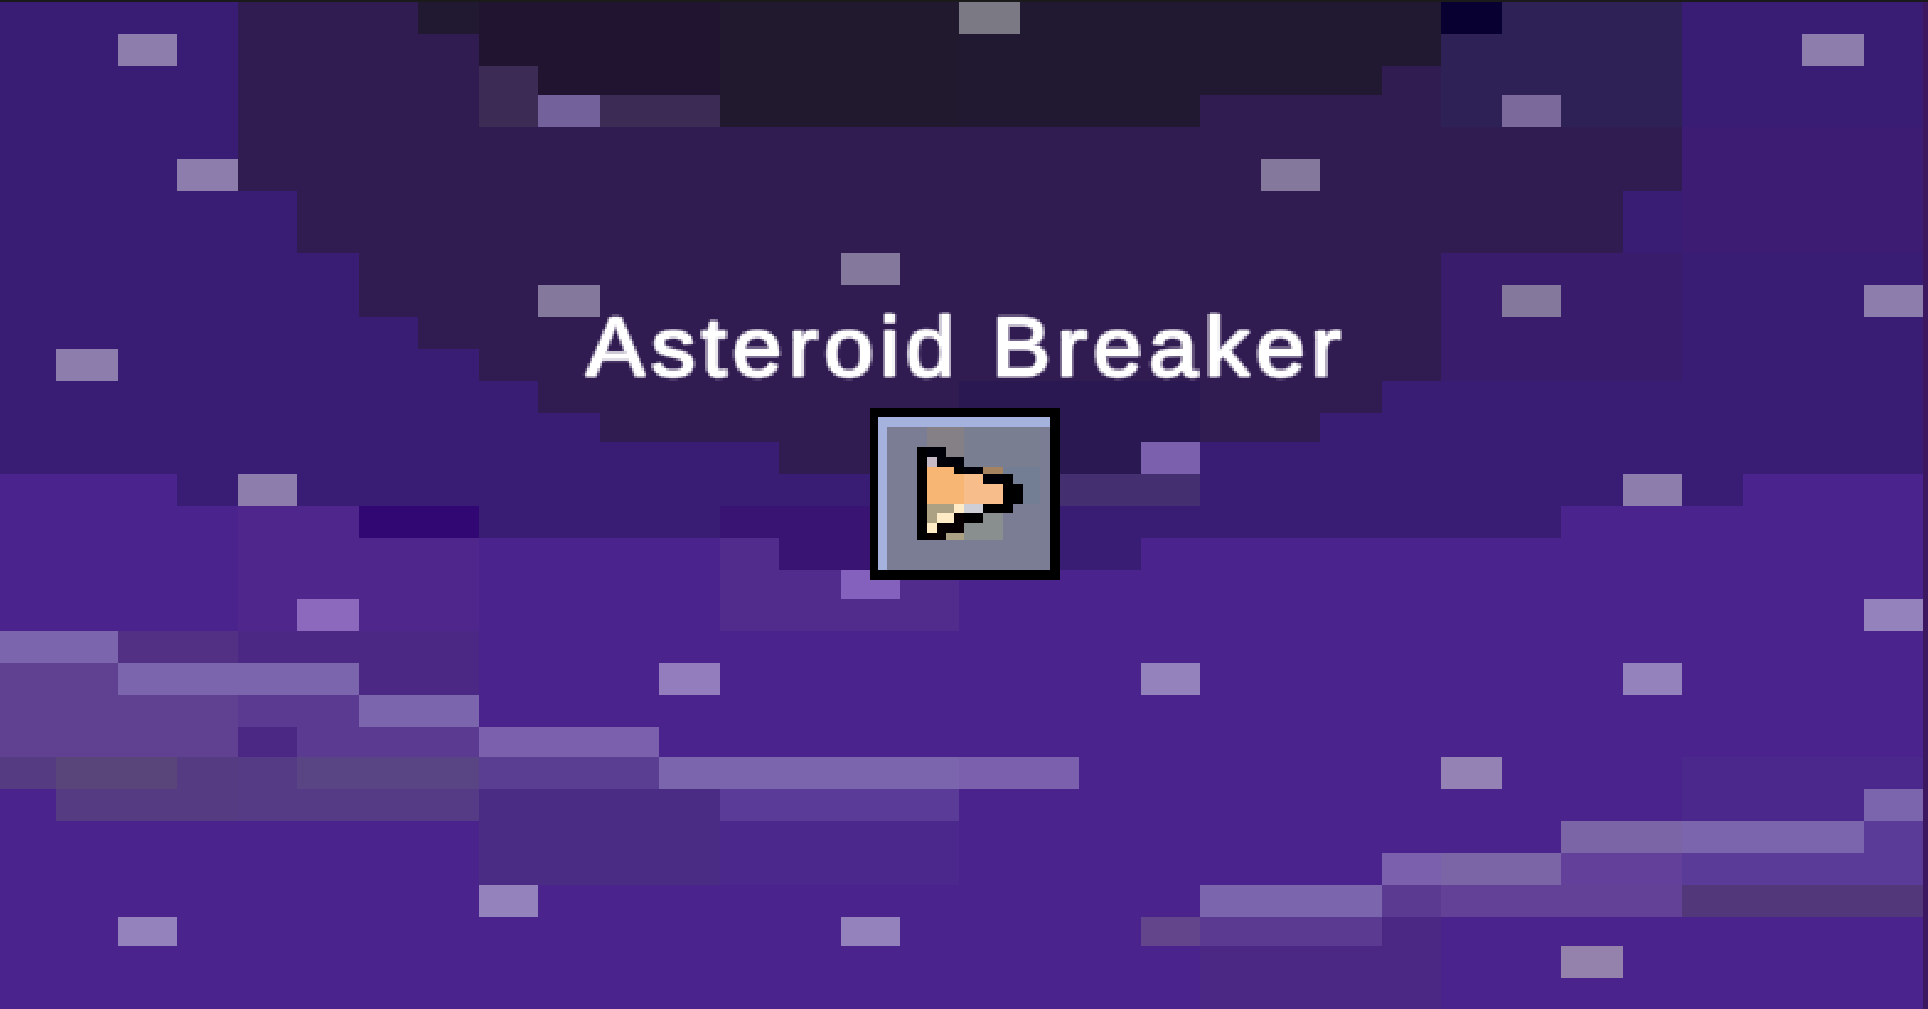 Asteroid Breaker - early development